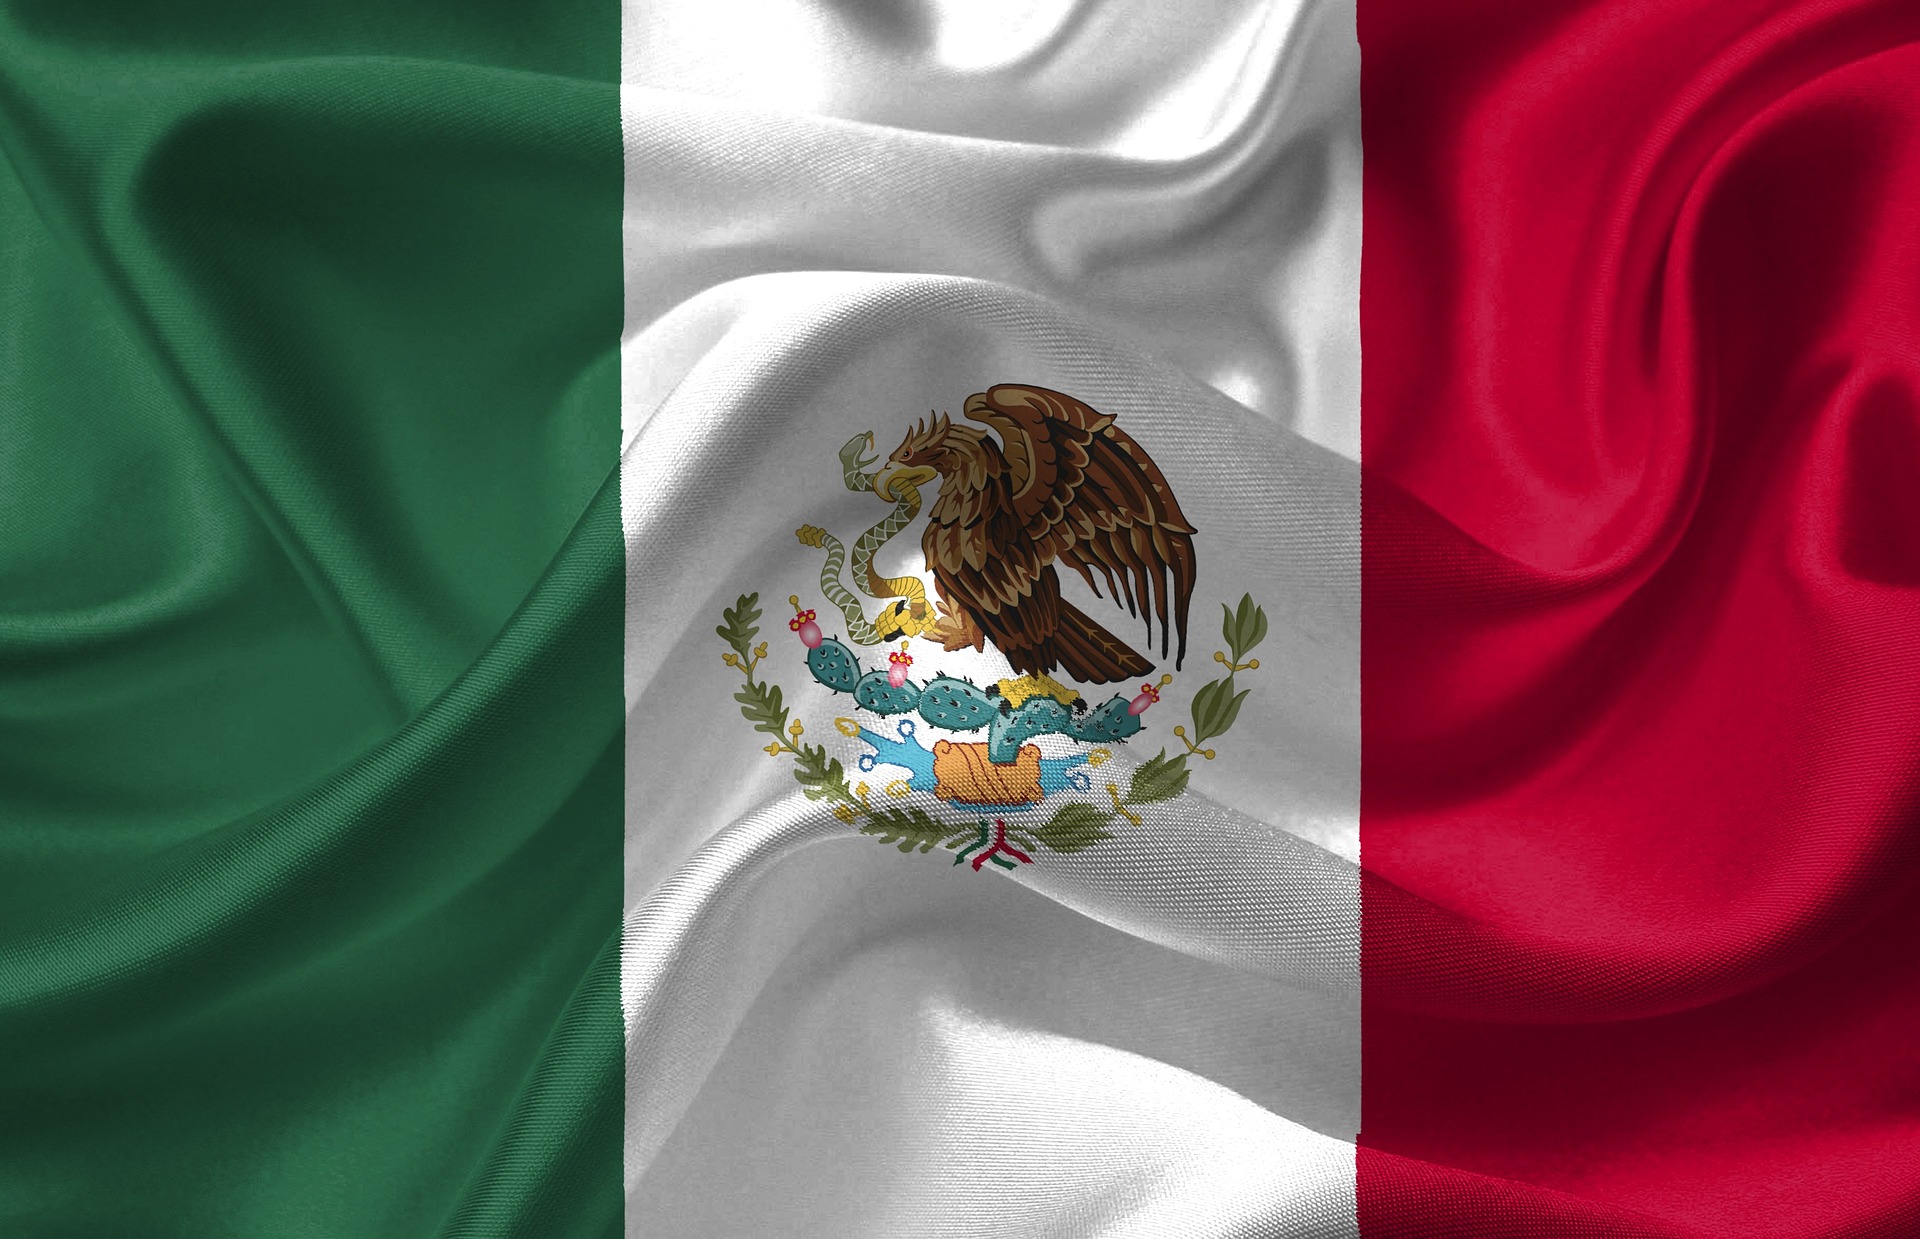 MEKSIKO PLANIRA DA UKINE POMJERANJE SATA: Stručnjaci upozoravaju na probleme